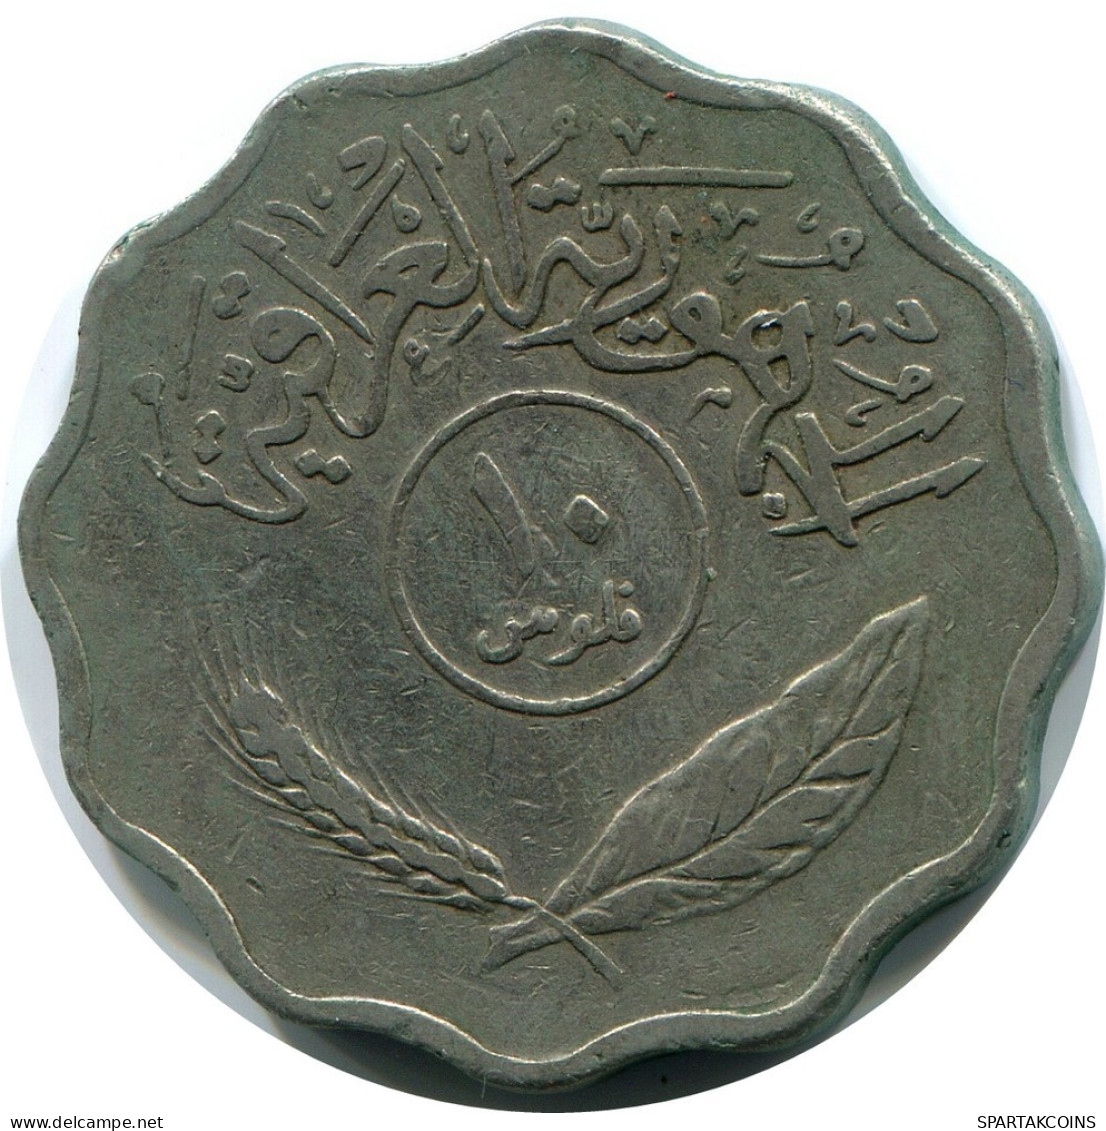 10 FILS 1967 IRAQ Coin #AP342.U.A